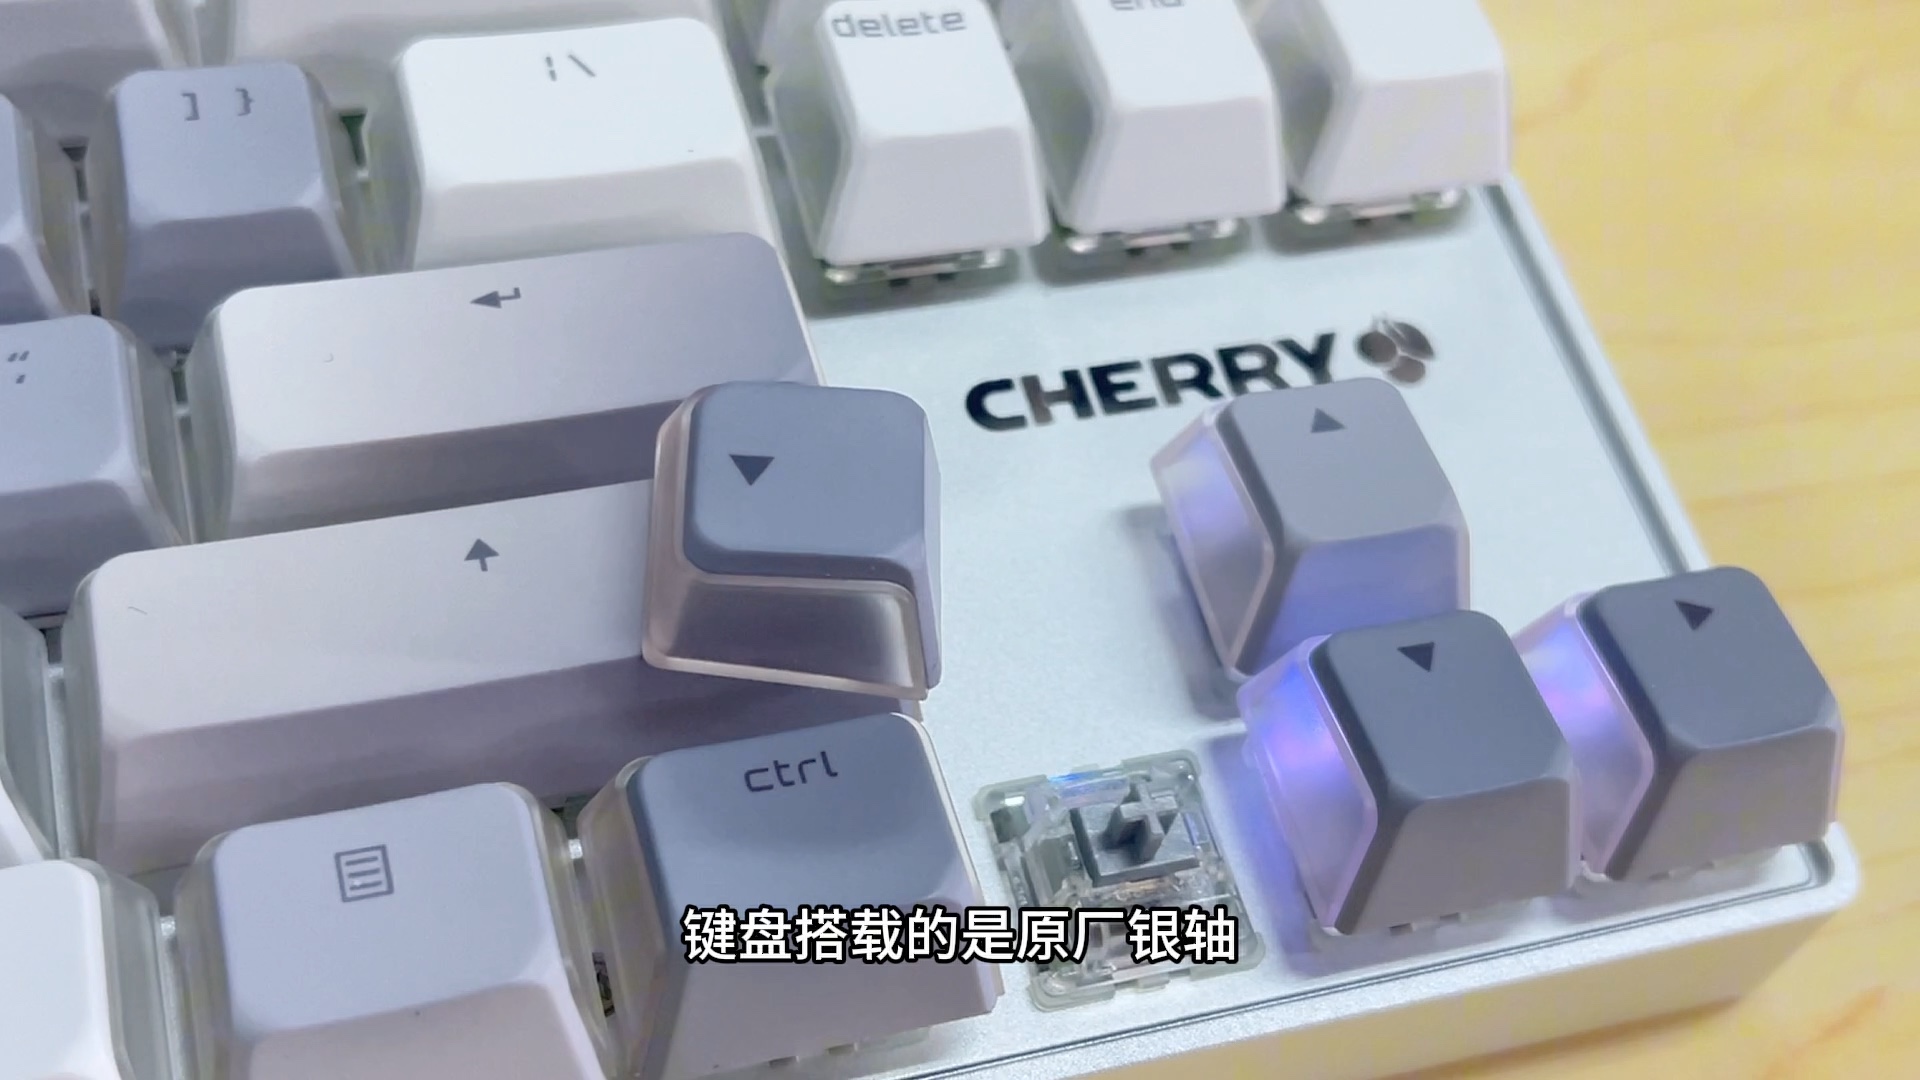 键盘还得是cherry啊，贵还是有理由的